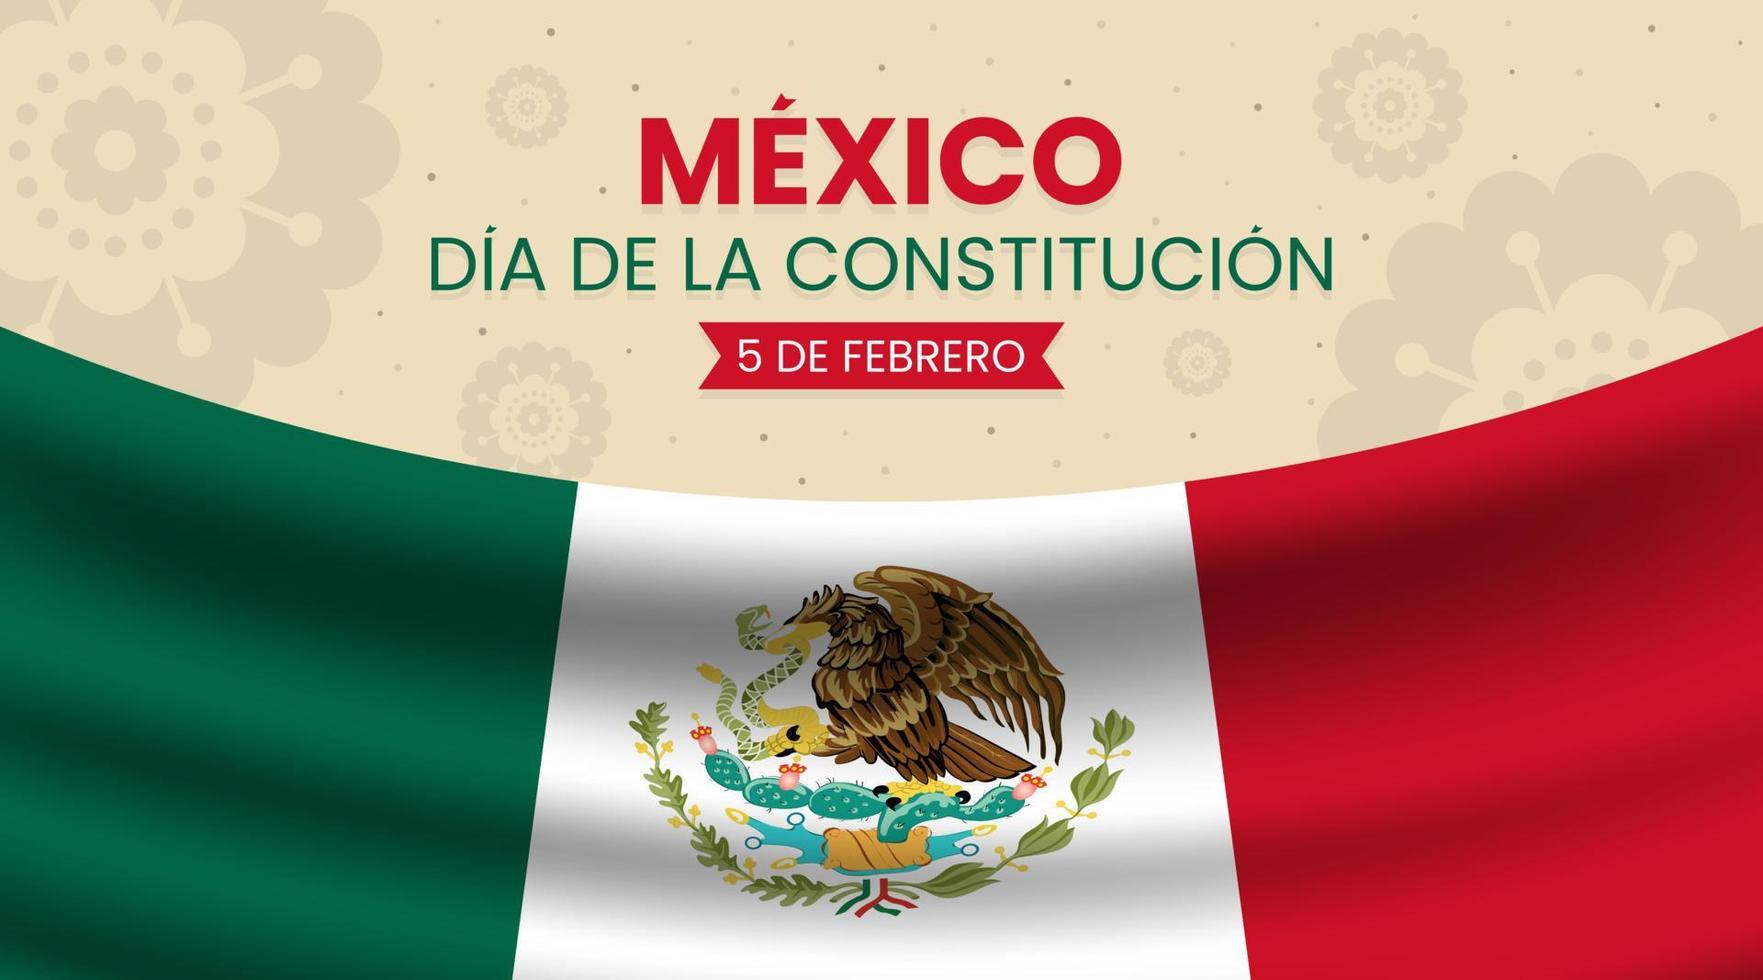 dia de la constitucion de mexico o antecedentes del dia de la constitucion de mexico con bandera y adornos realistas vector